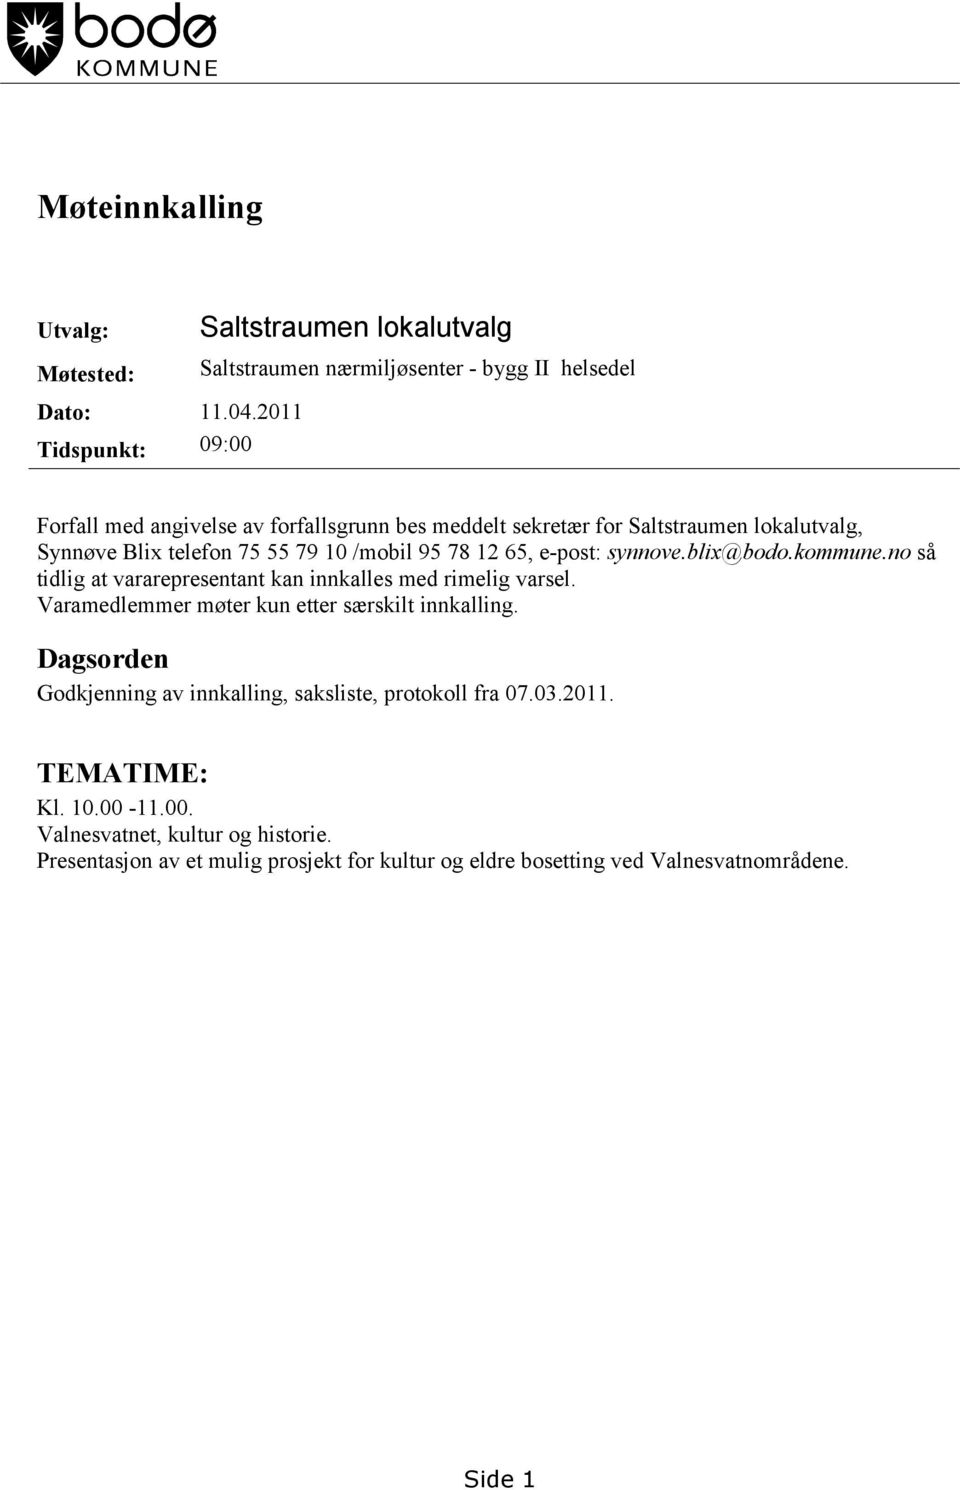 Saltstraumen lokalutvalg, Synnøve Blix telefon 75 55 79 10 /mobil 95 78 12 65, e-post: synnove.blix@bodo.kommune.